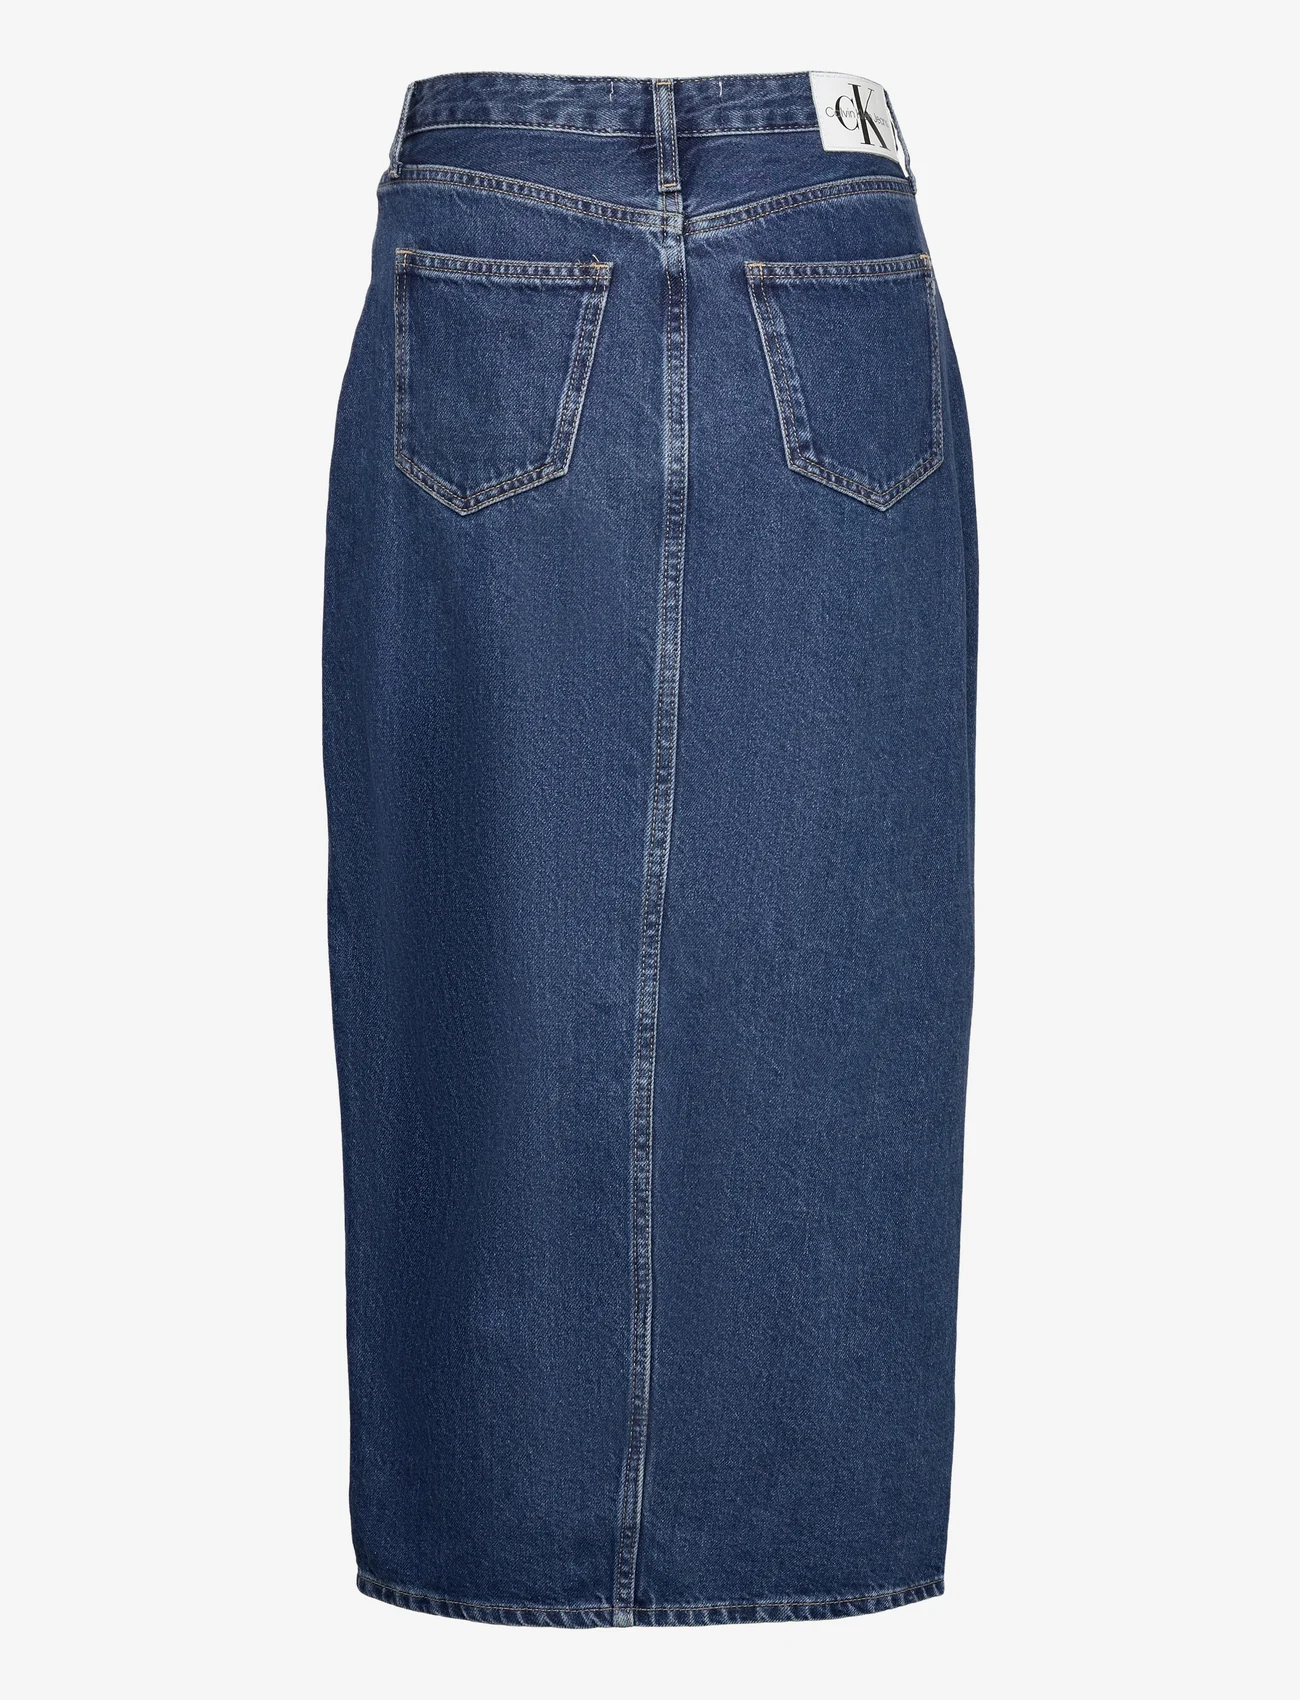 Calvin Klein Jeans - FRONT SPLIT MAXI DENIM SKIRT - ilgi sijonai - denim dark - 1